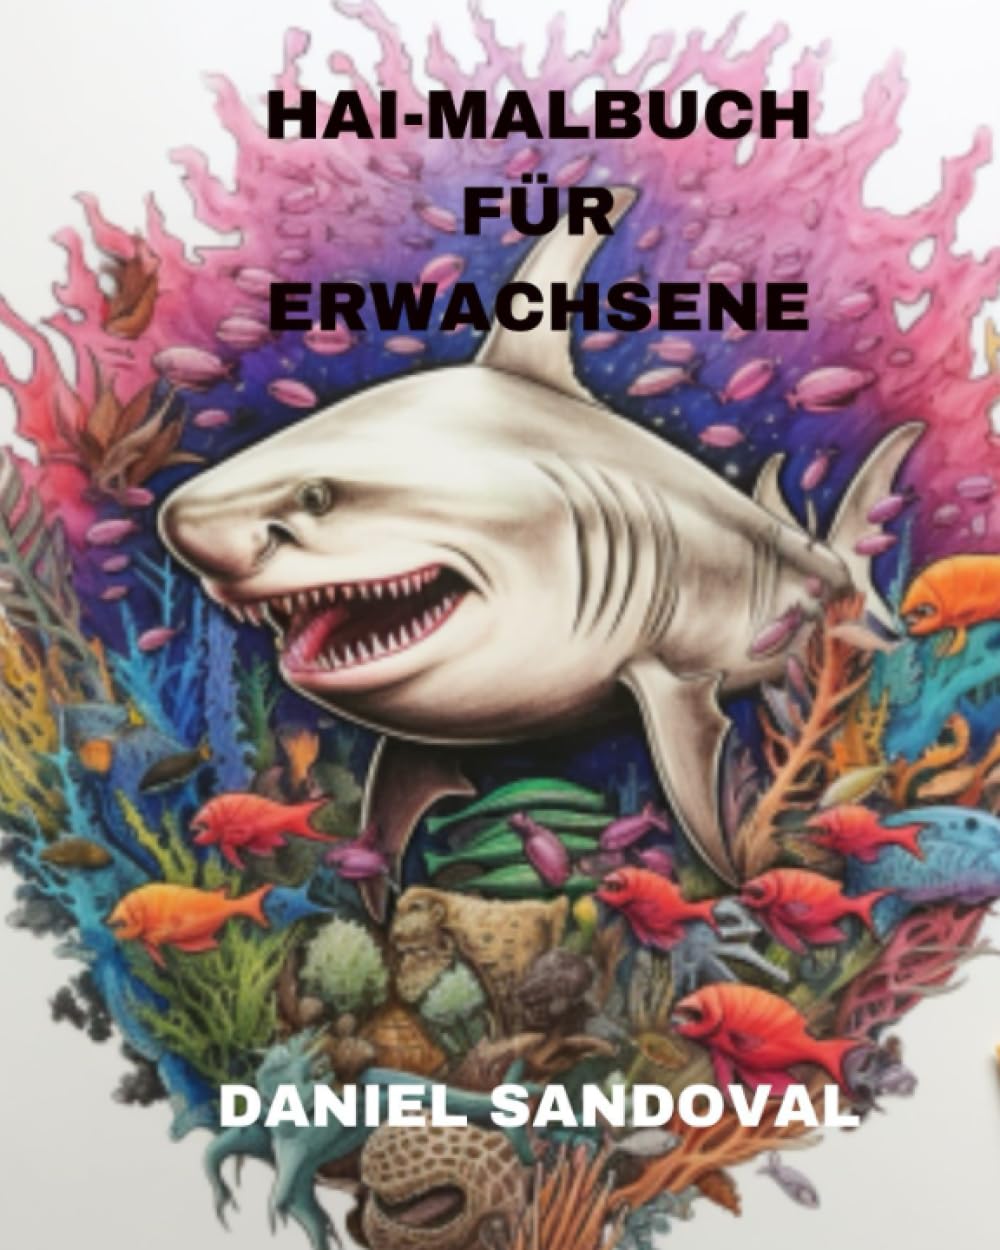 HAI-MALBUCH FÜR ERWACHSENE (German Edition)